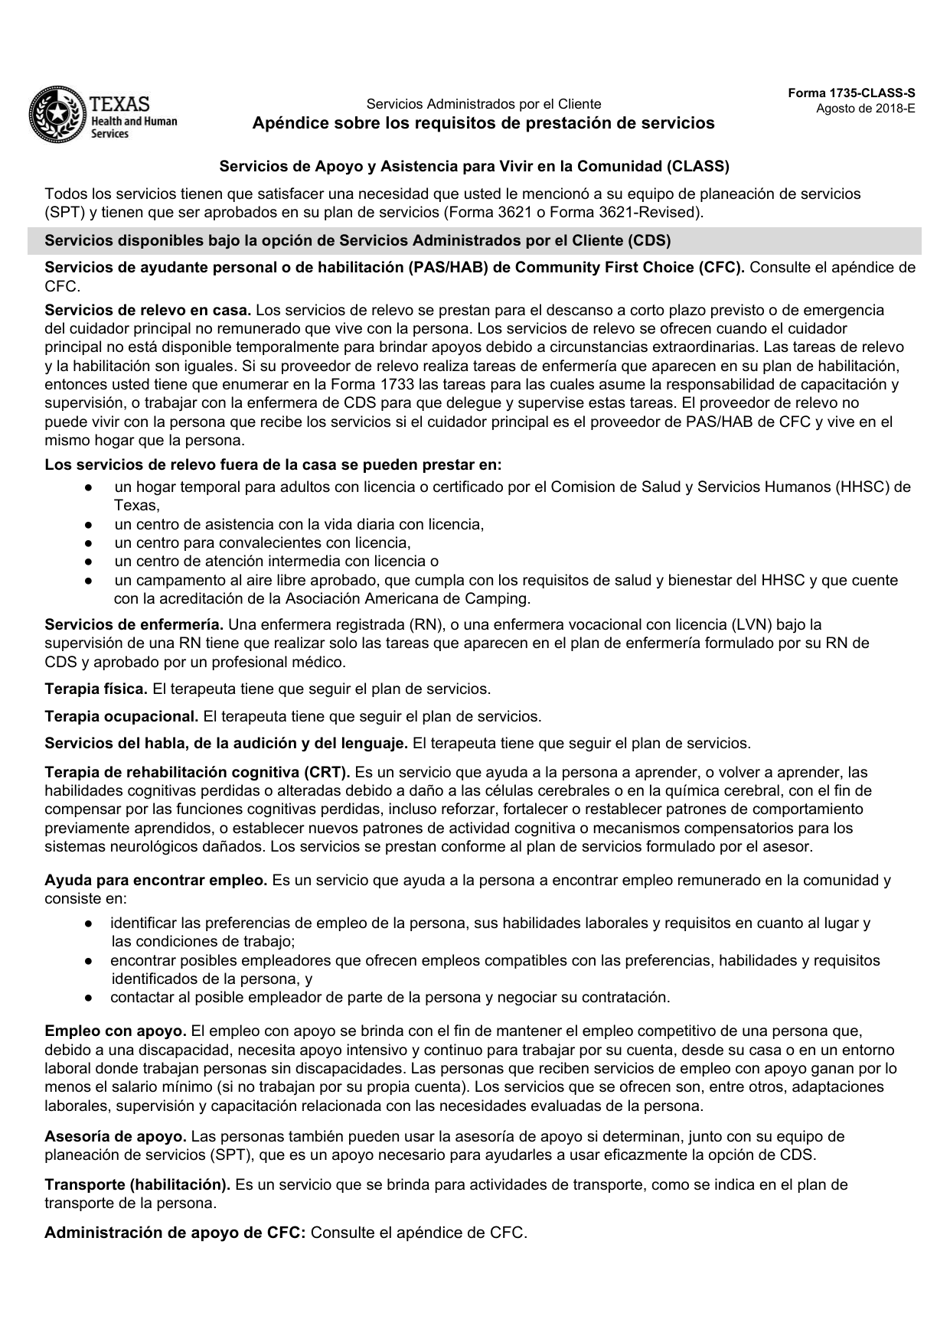 Formulario 1735-CLASS-S Apendice Sobre Los Requisitos De Prestacion De Servicios - Servicios De Apoyo Y Asistencia Para Vivir En La Comunidad (Class) - Texas (Spanish), Page 1